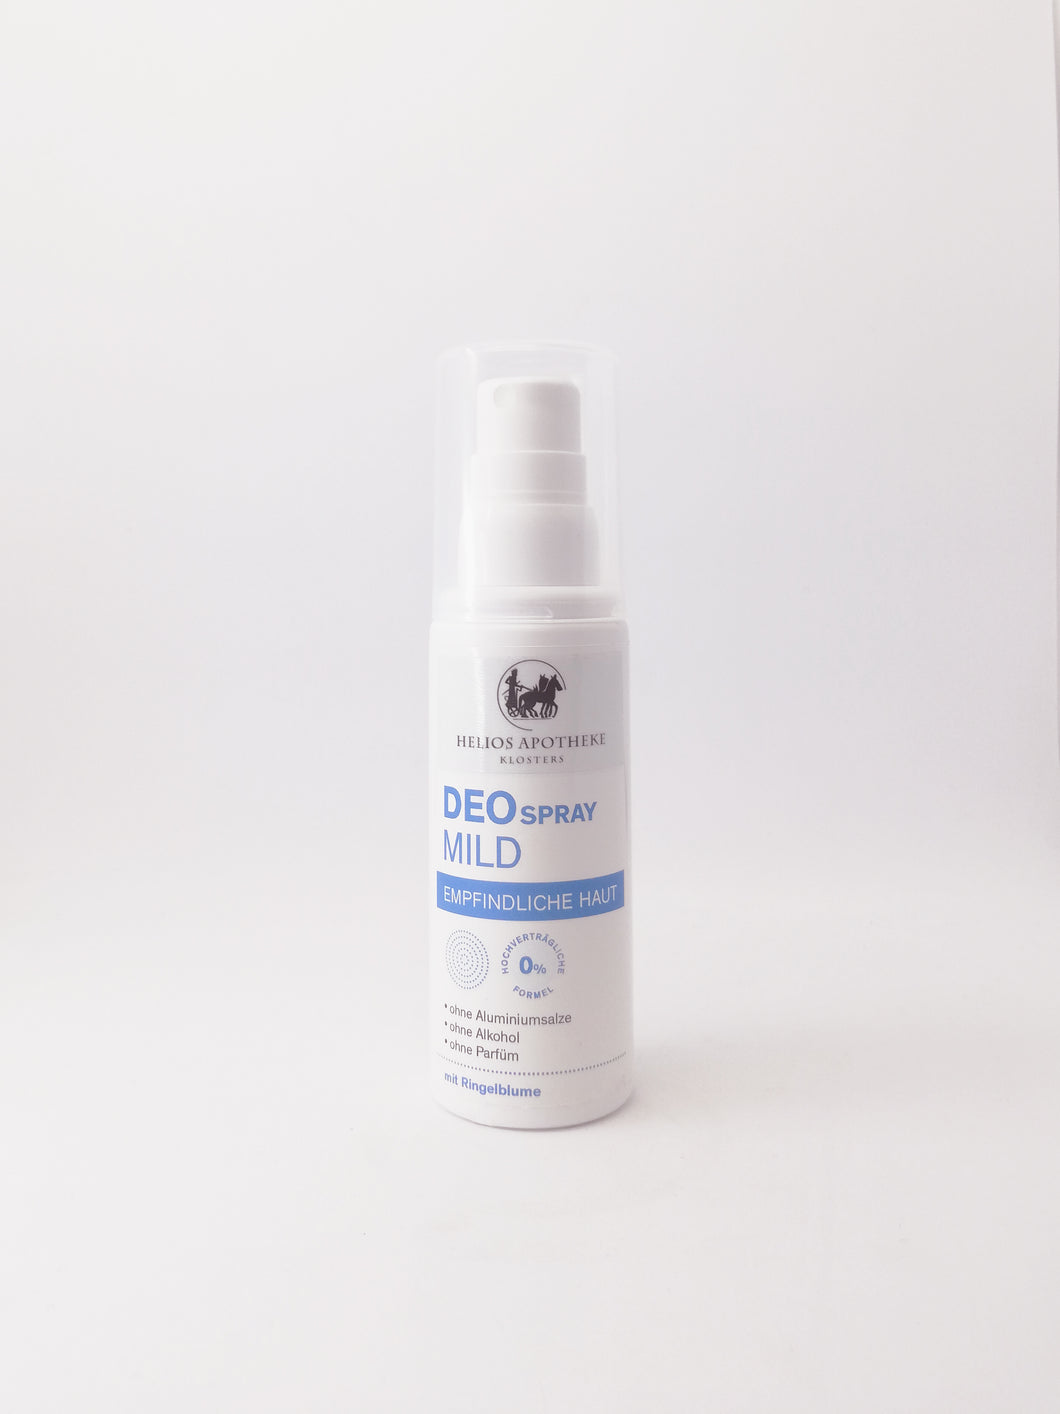 Deo Spray Mild – Hochverträglich, ideal für die empfindliche und reaktive Haut, ohne Alkohol, ohne Aluminium, ohne Parfum. Erhältlich im Shop der Helios Apotheke Klosters.